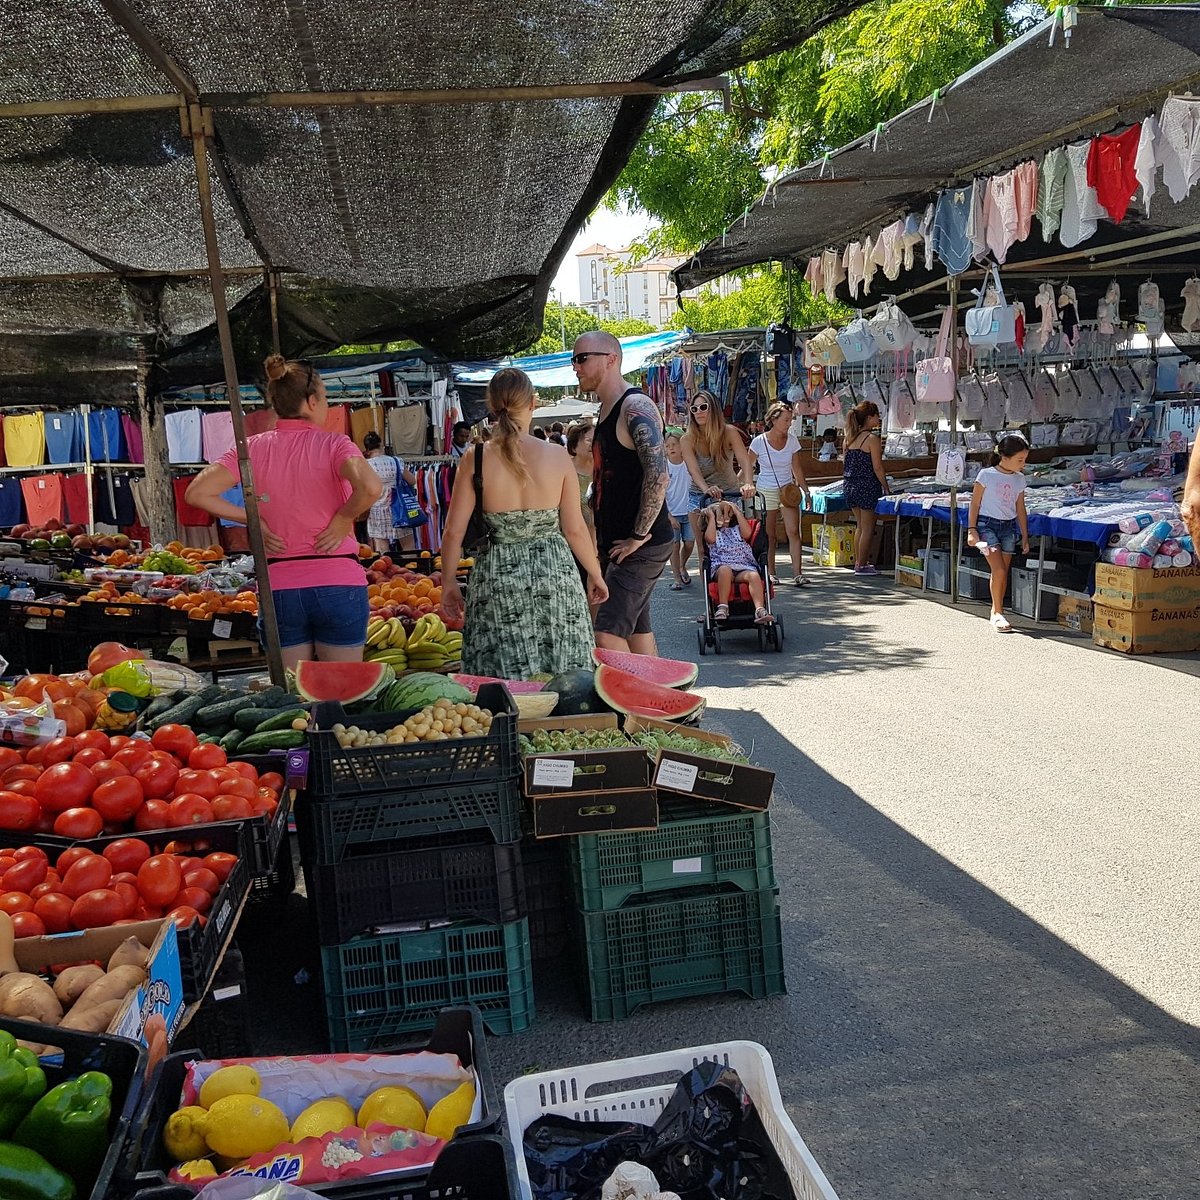 Puerto Banus Street Market - Picture of Puerto Banus Street Market, Marbella  - Tripadvisor